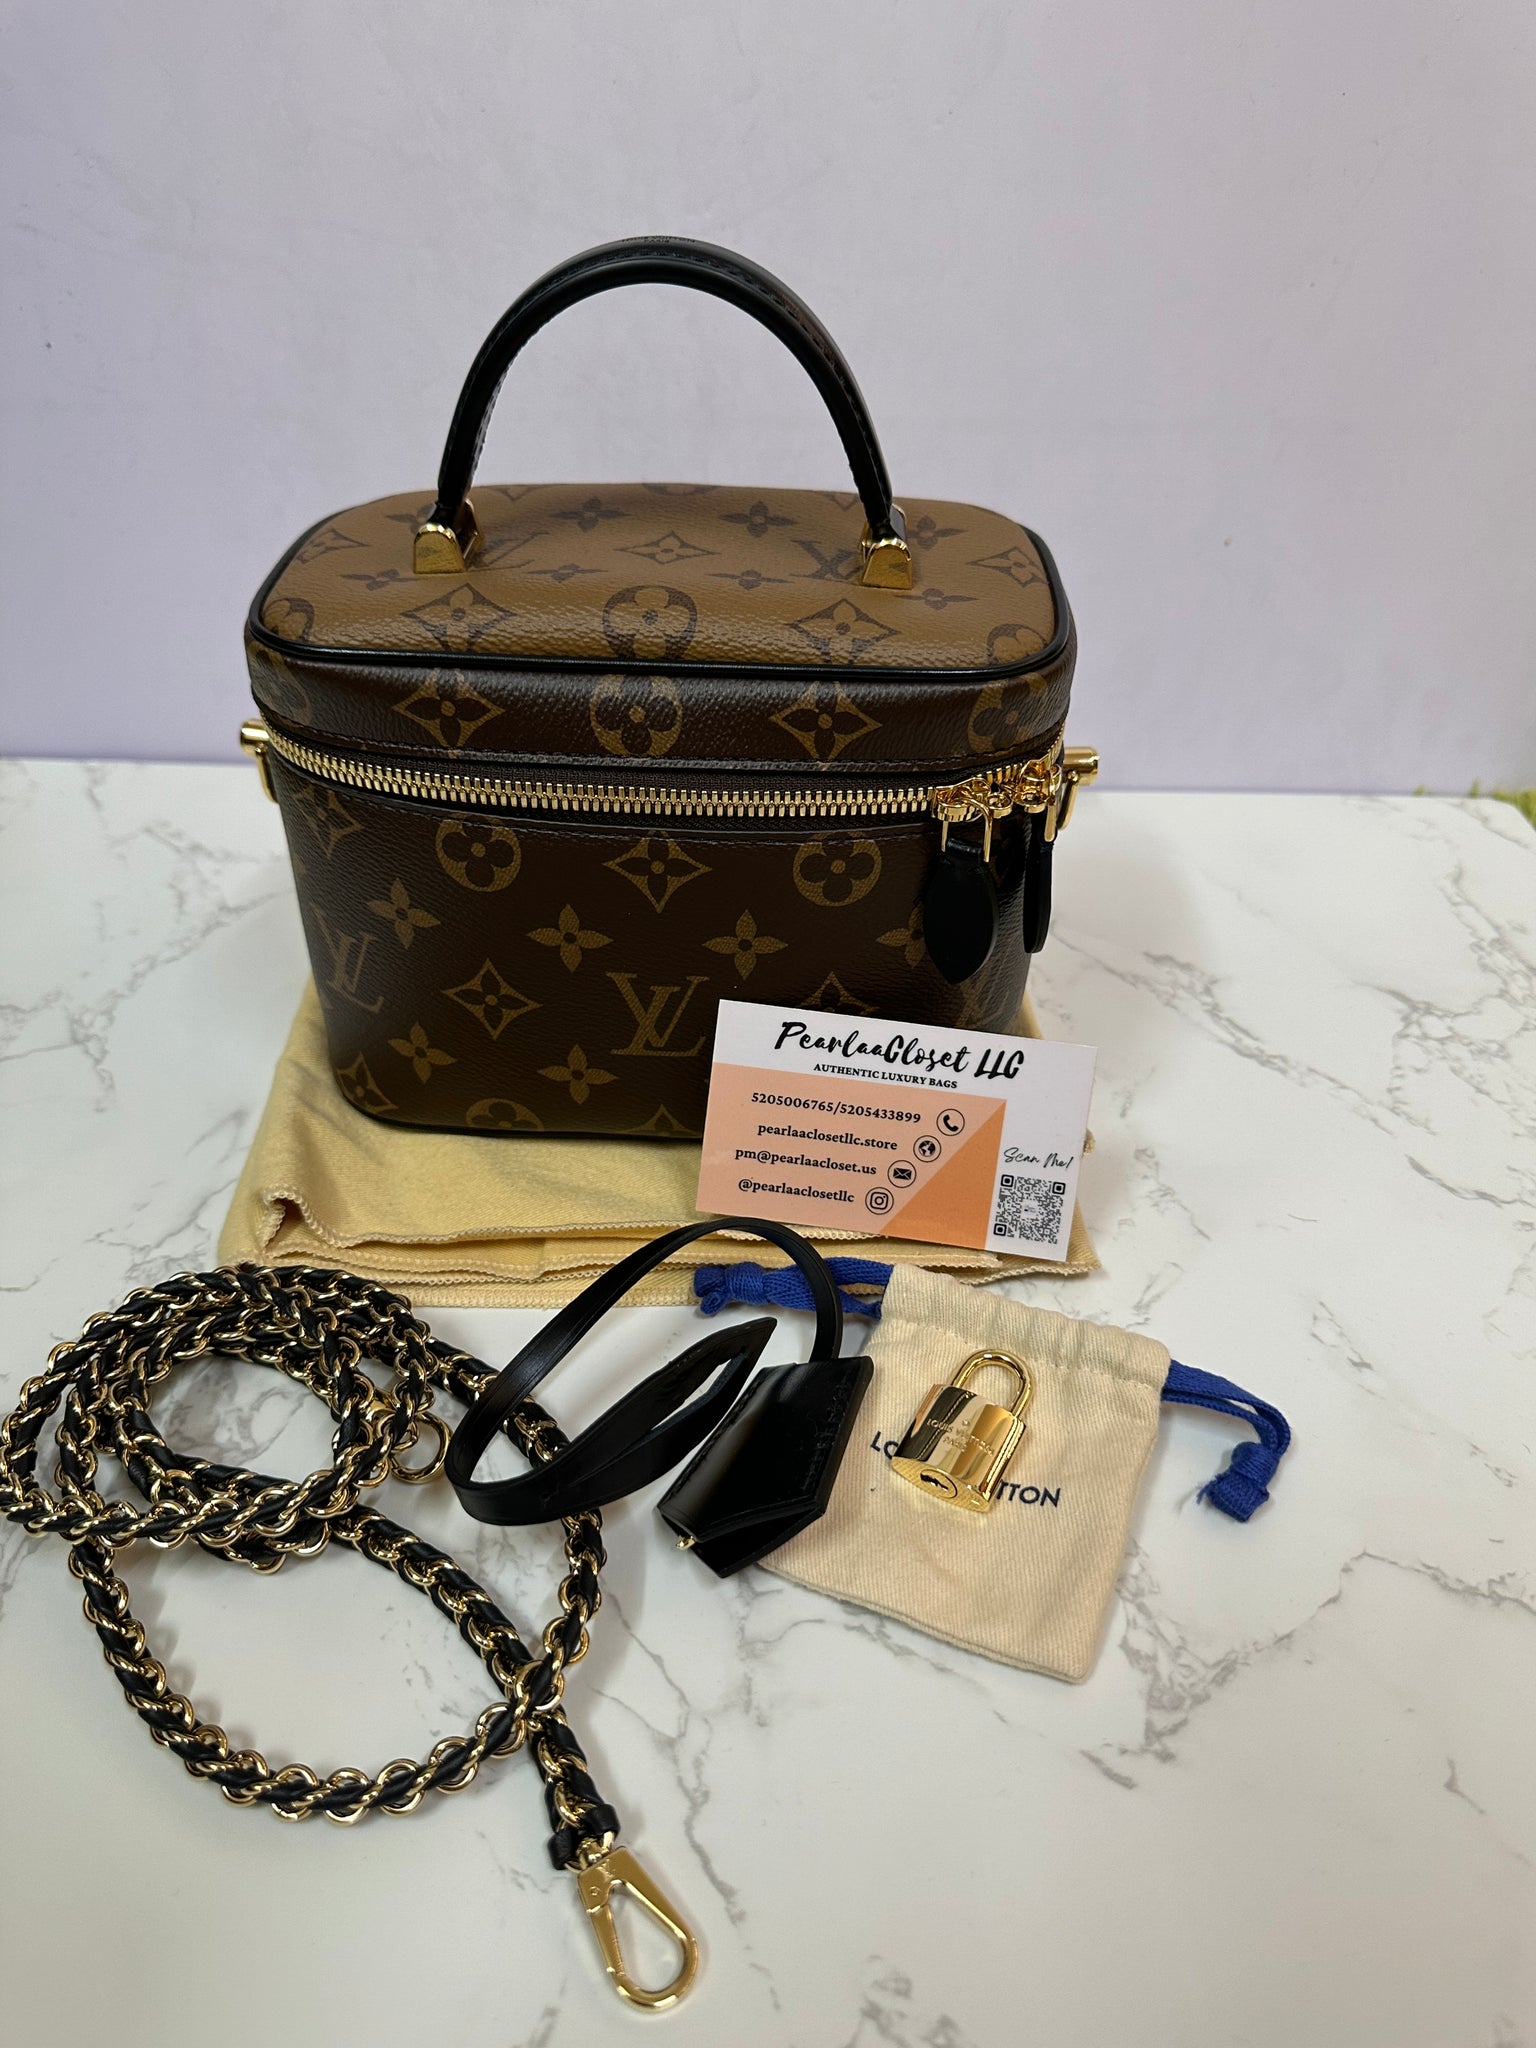 Vanity PM Autres Toiles Monogram - Women - Handbags